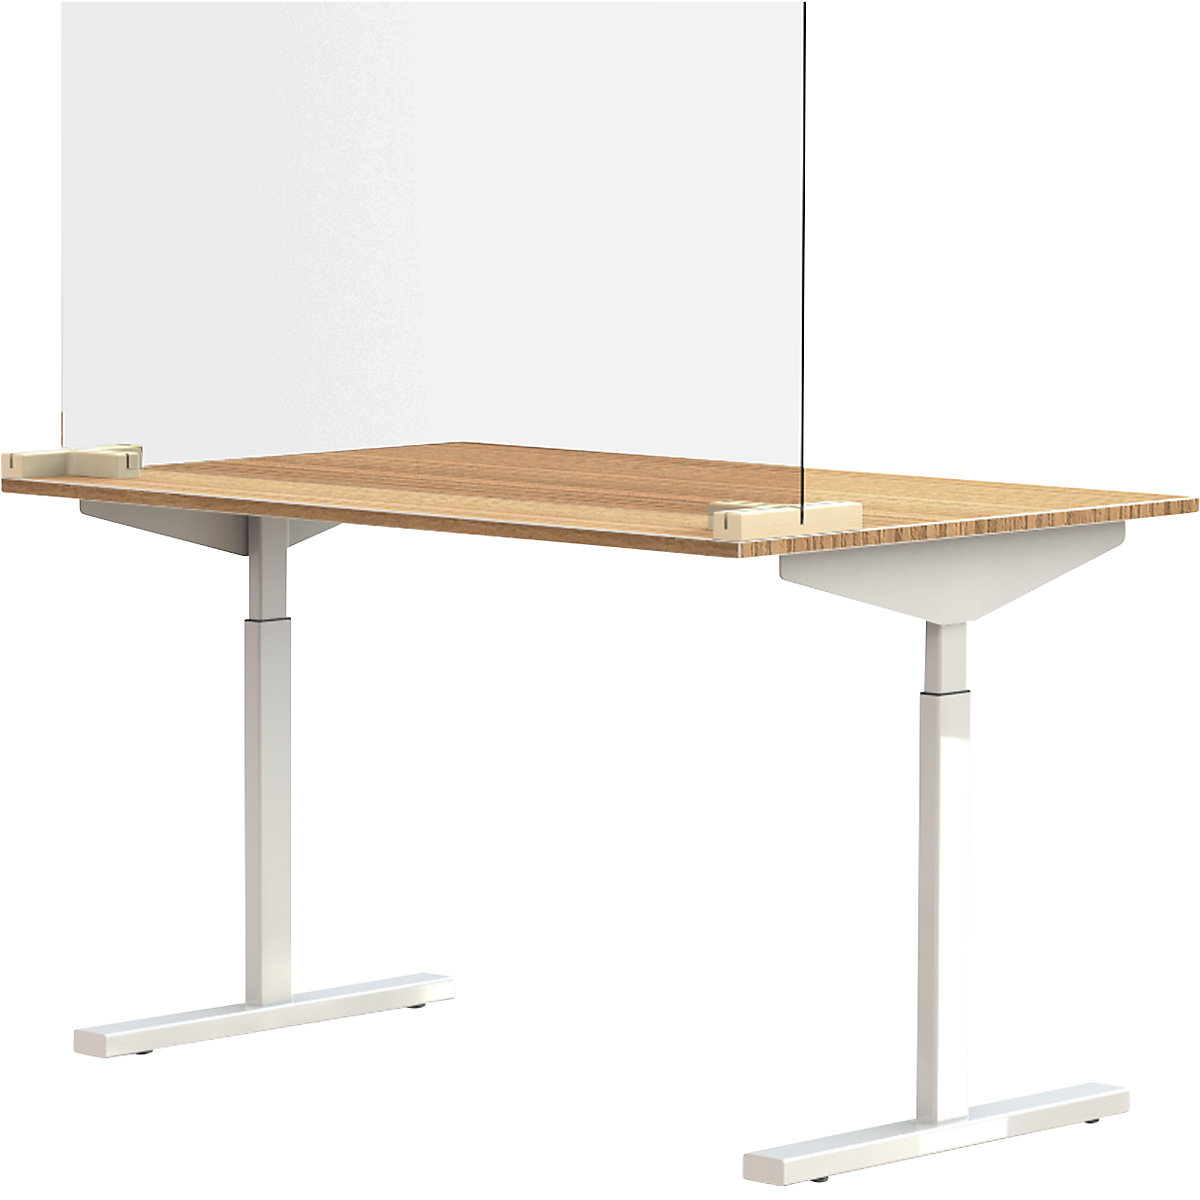 Szybka działowa na biurka/stoły, z 2 łącznikami podstawy w kształcie litery T, wys. x szer. 590 x 1200 mm, od 5 szt.-5